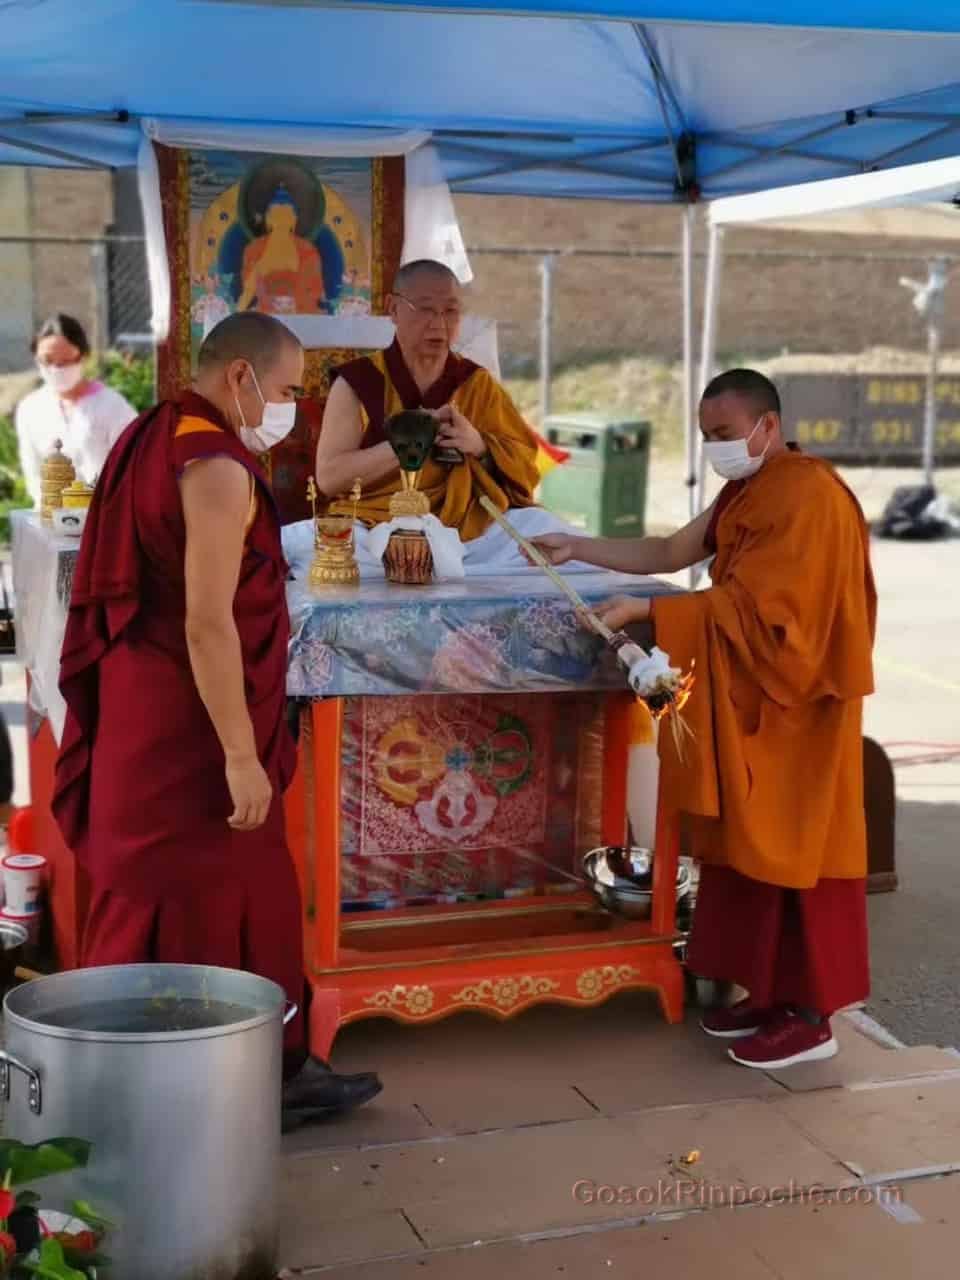 Gosok rinpoche Yamantaka Fire Puja 20190922220003